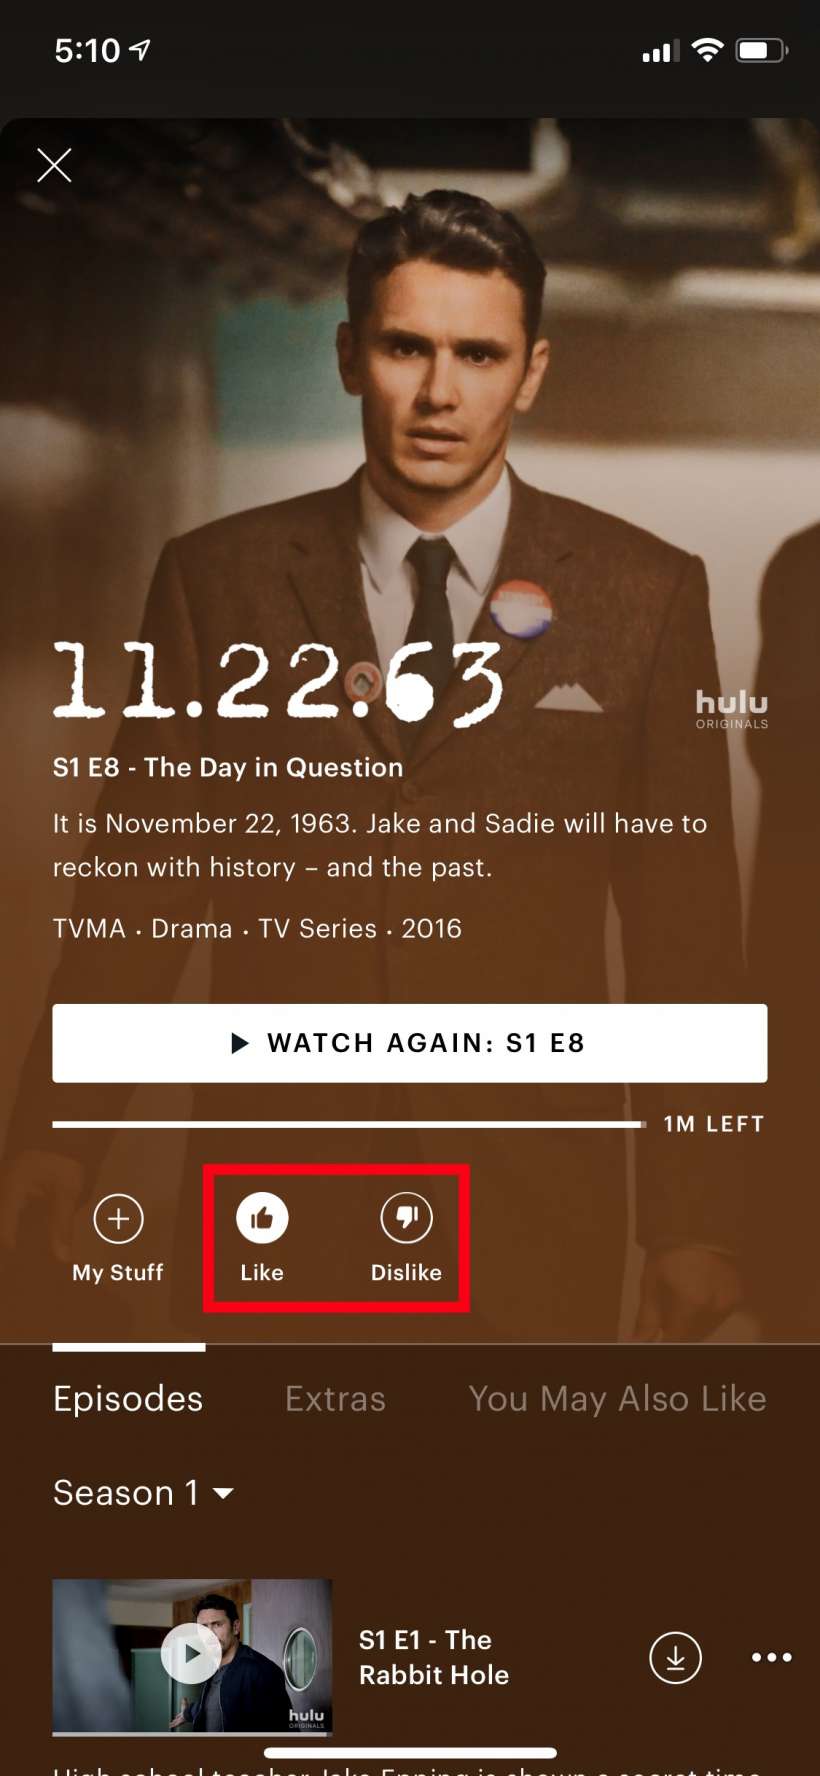 5 نصائح لتحسين تجربة Hulu الخاصة بك 121